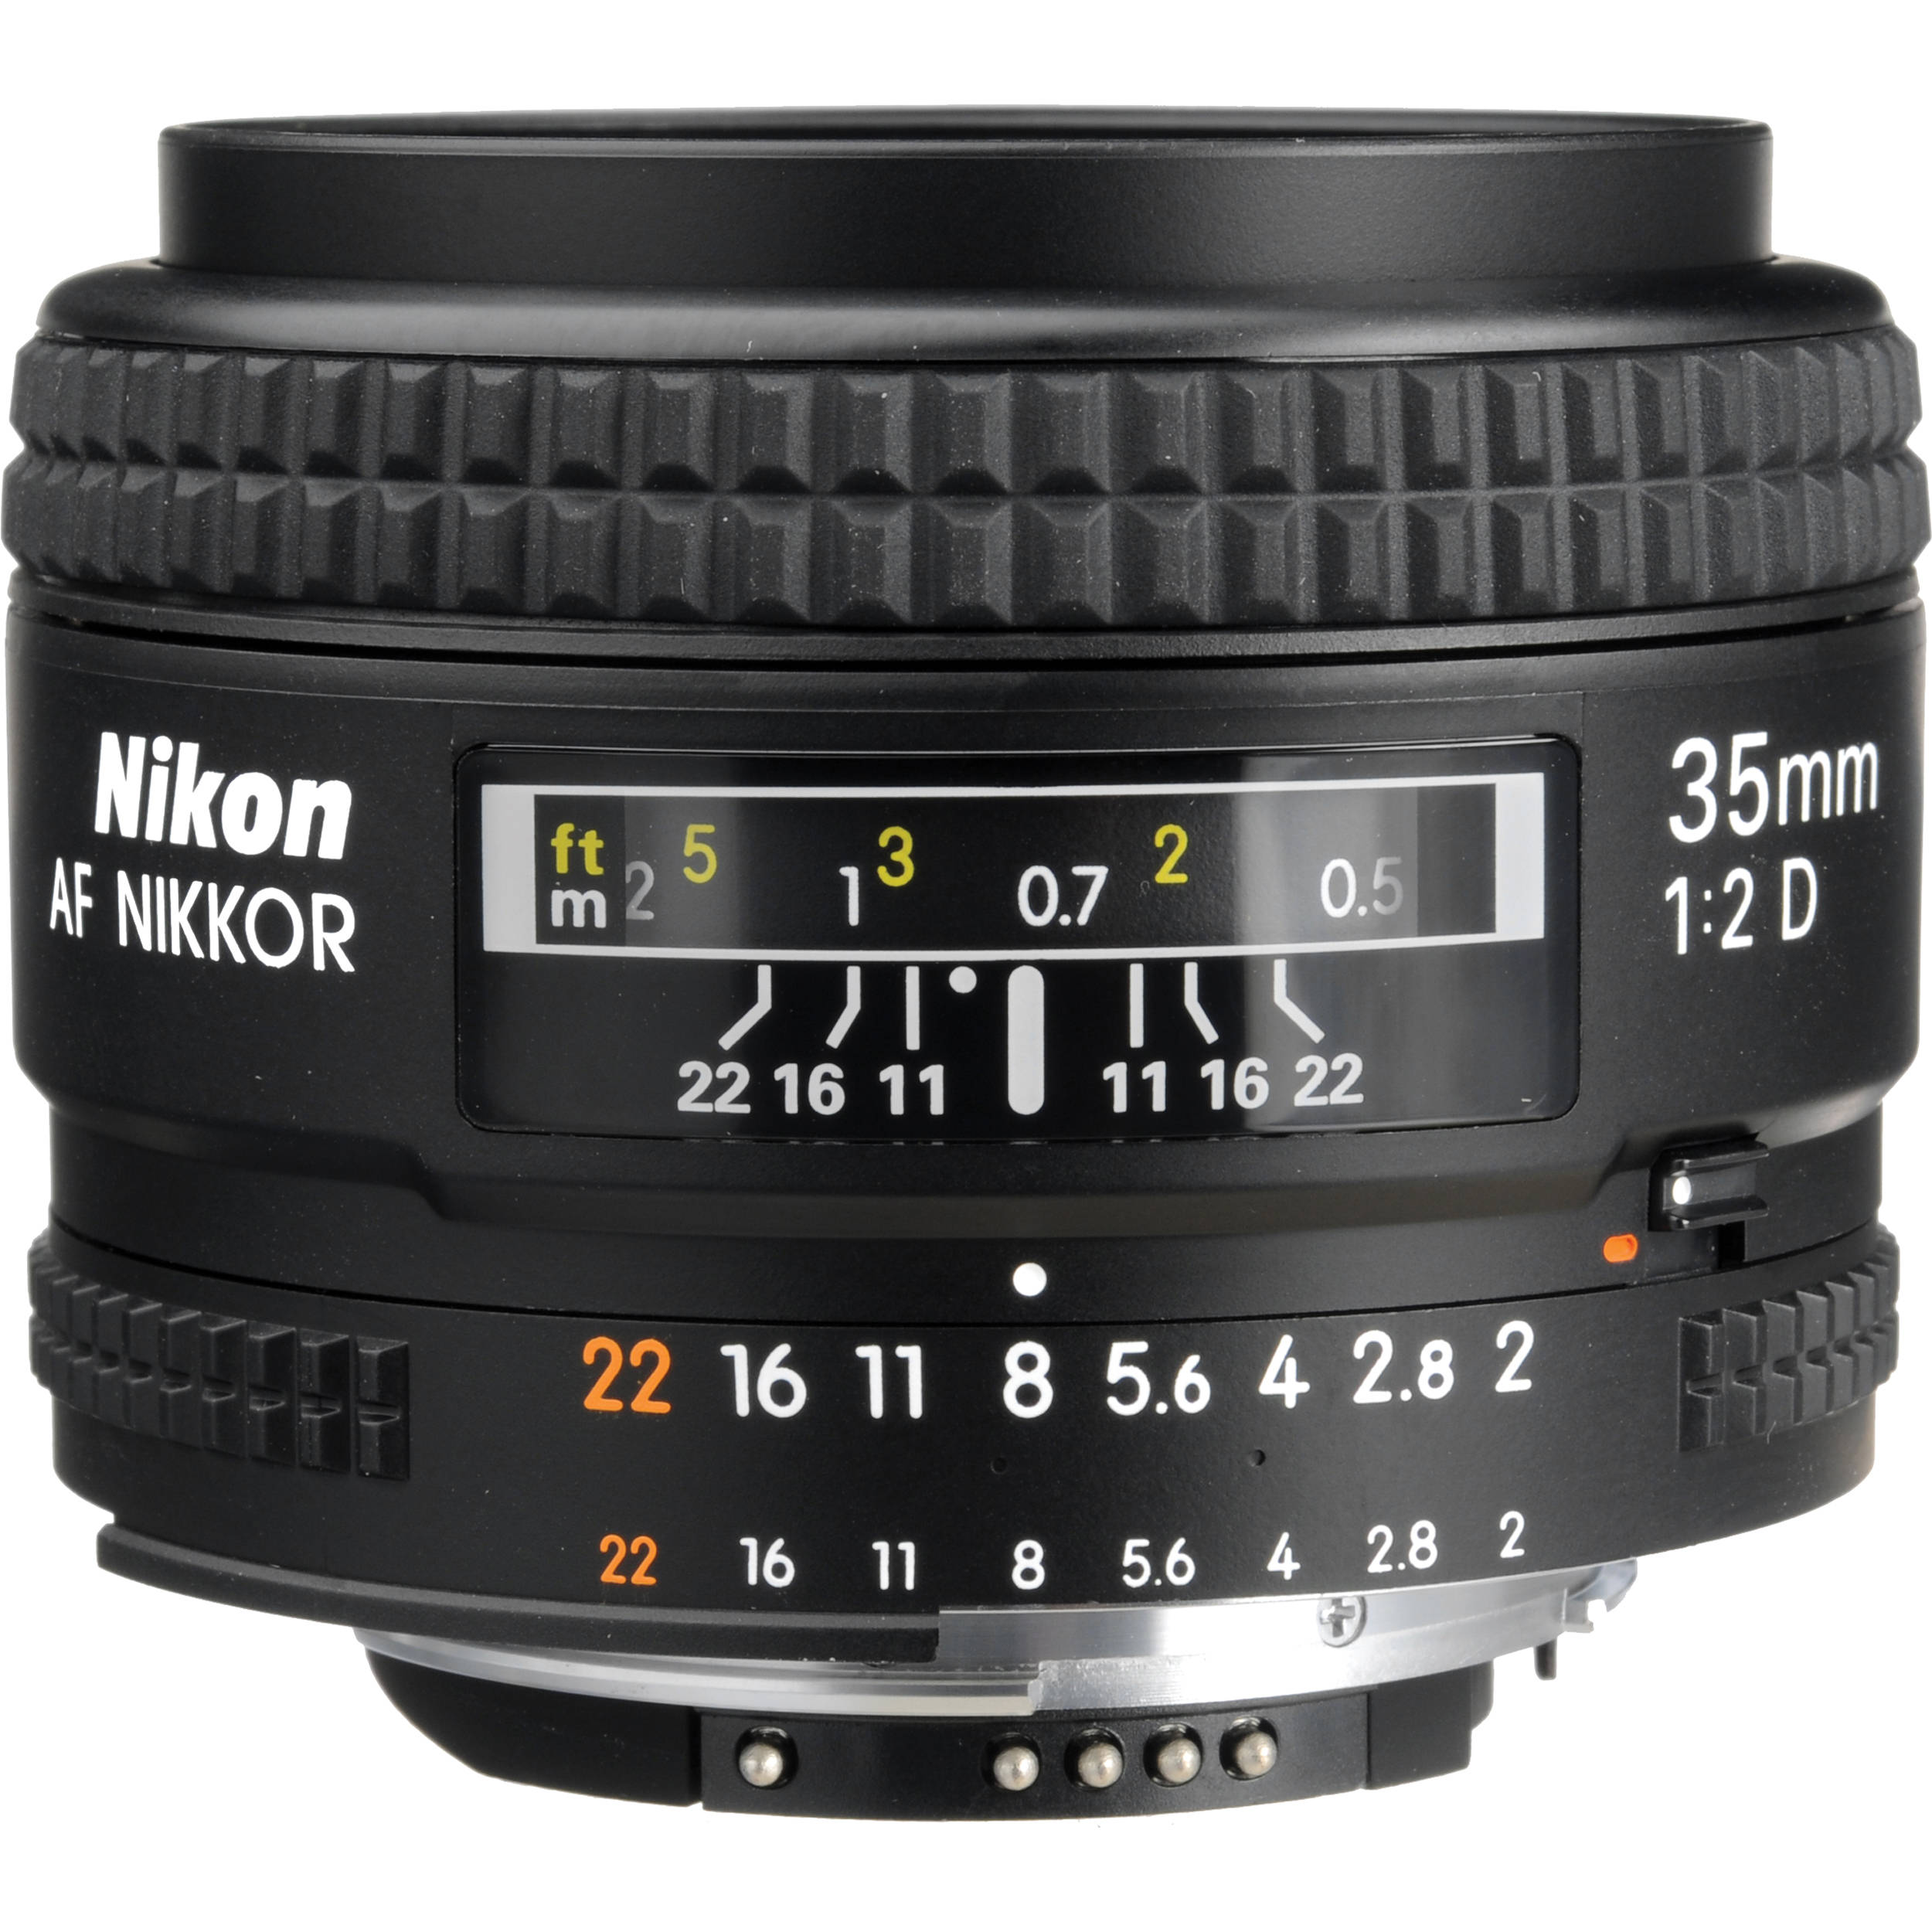 Nikon Af Nikkor 35mm F 2d Lens 1923 B H Photo Video